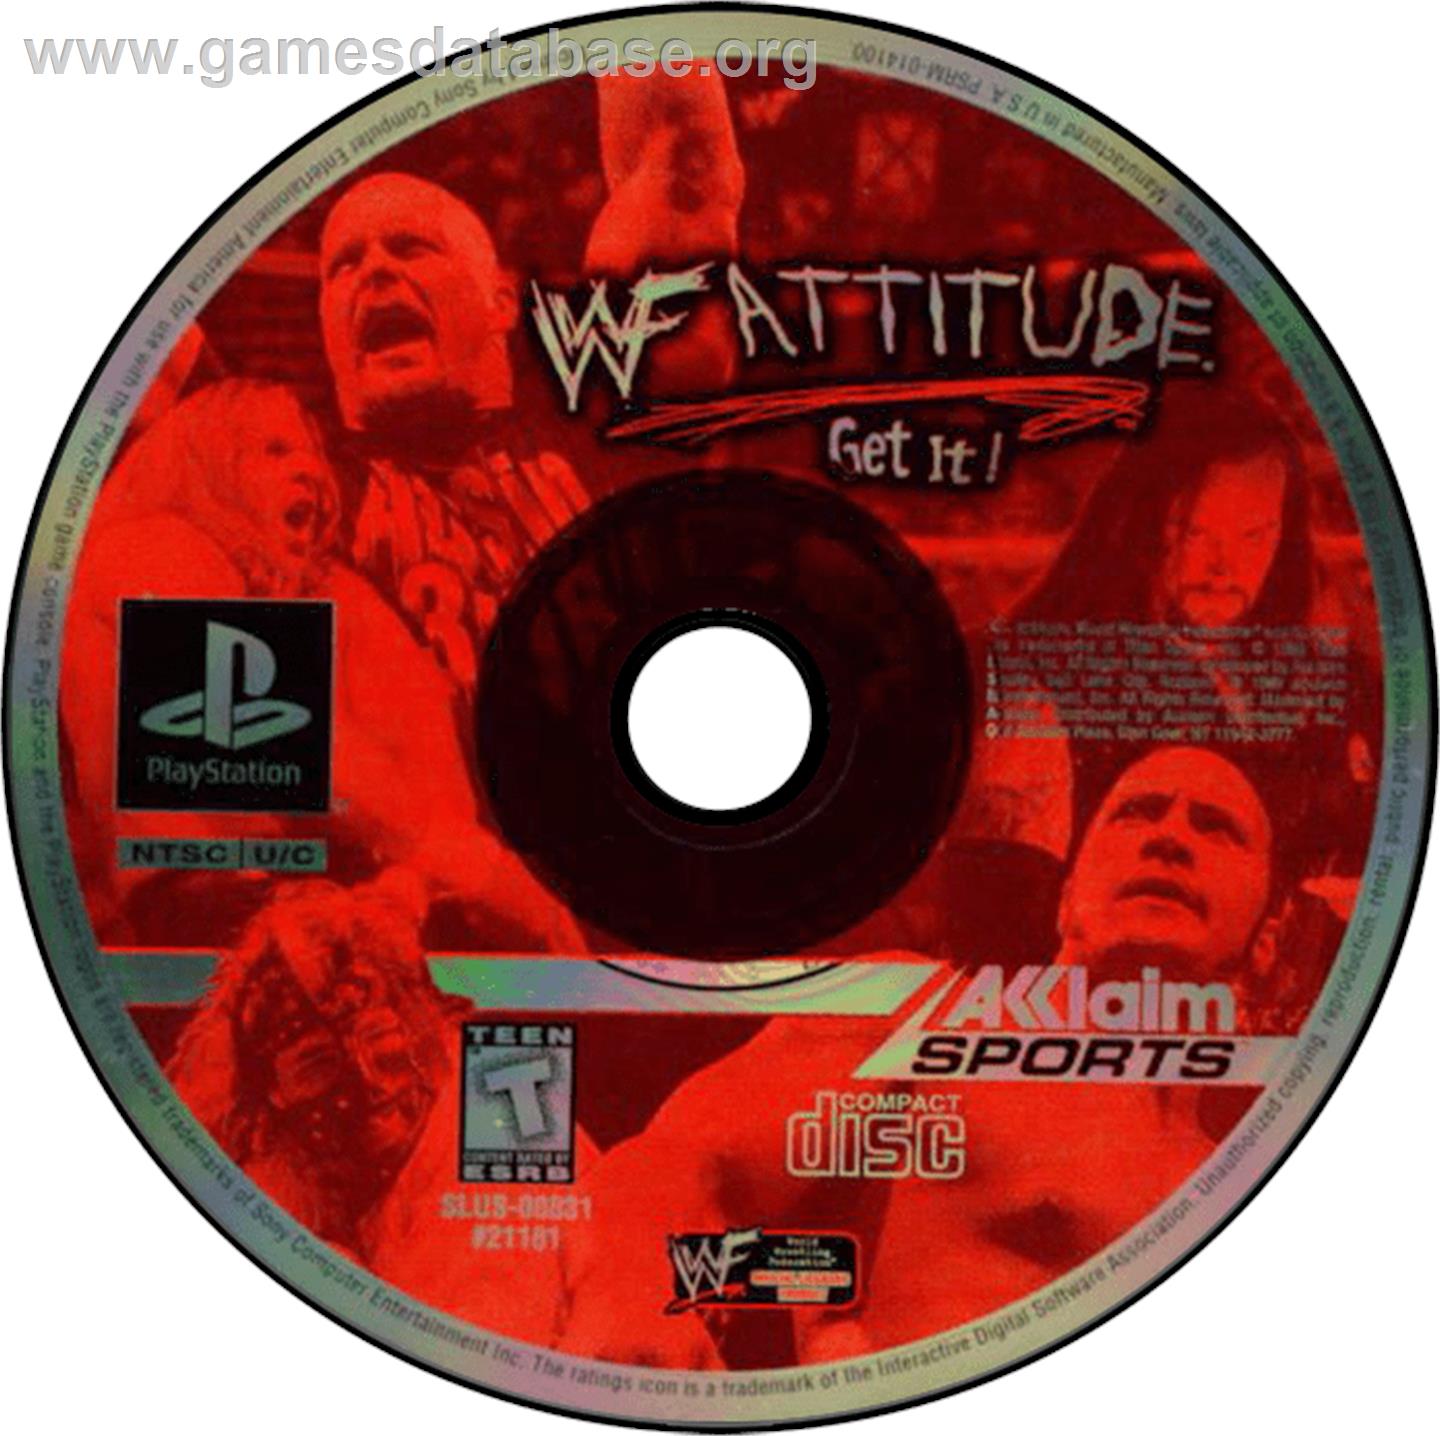 WWF Attitude - Sony Playstation - Artwork - Disc